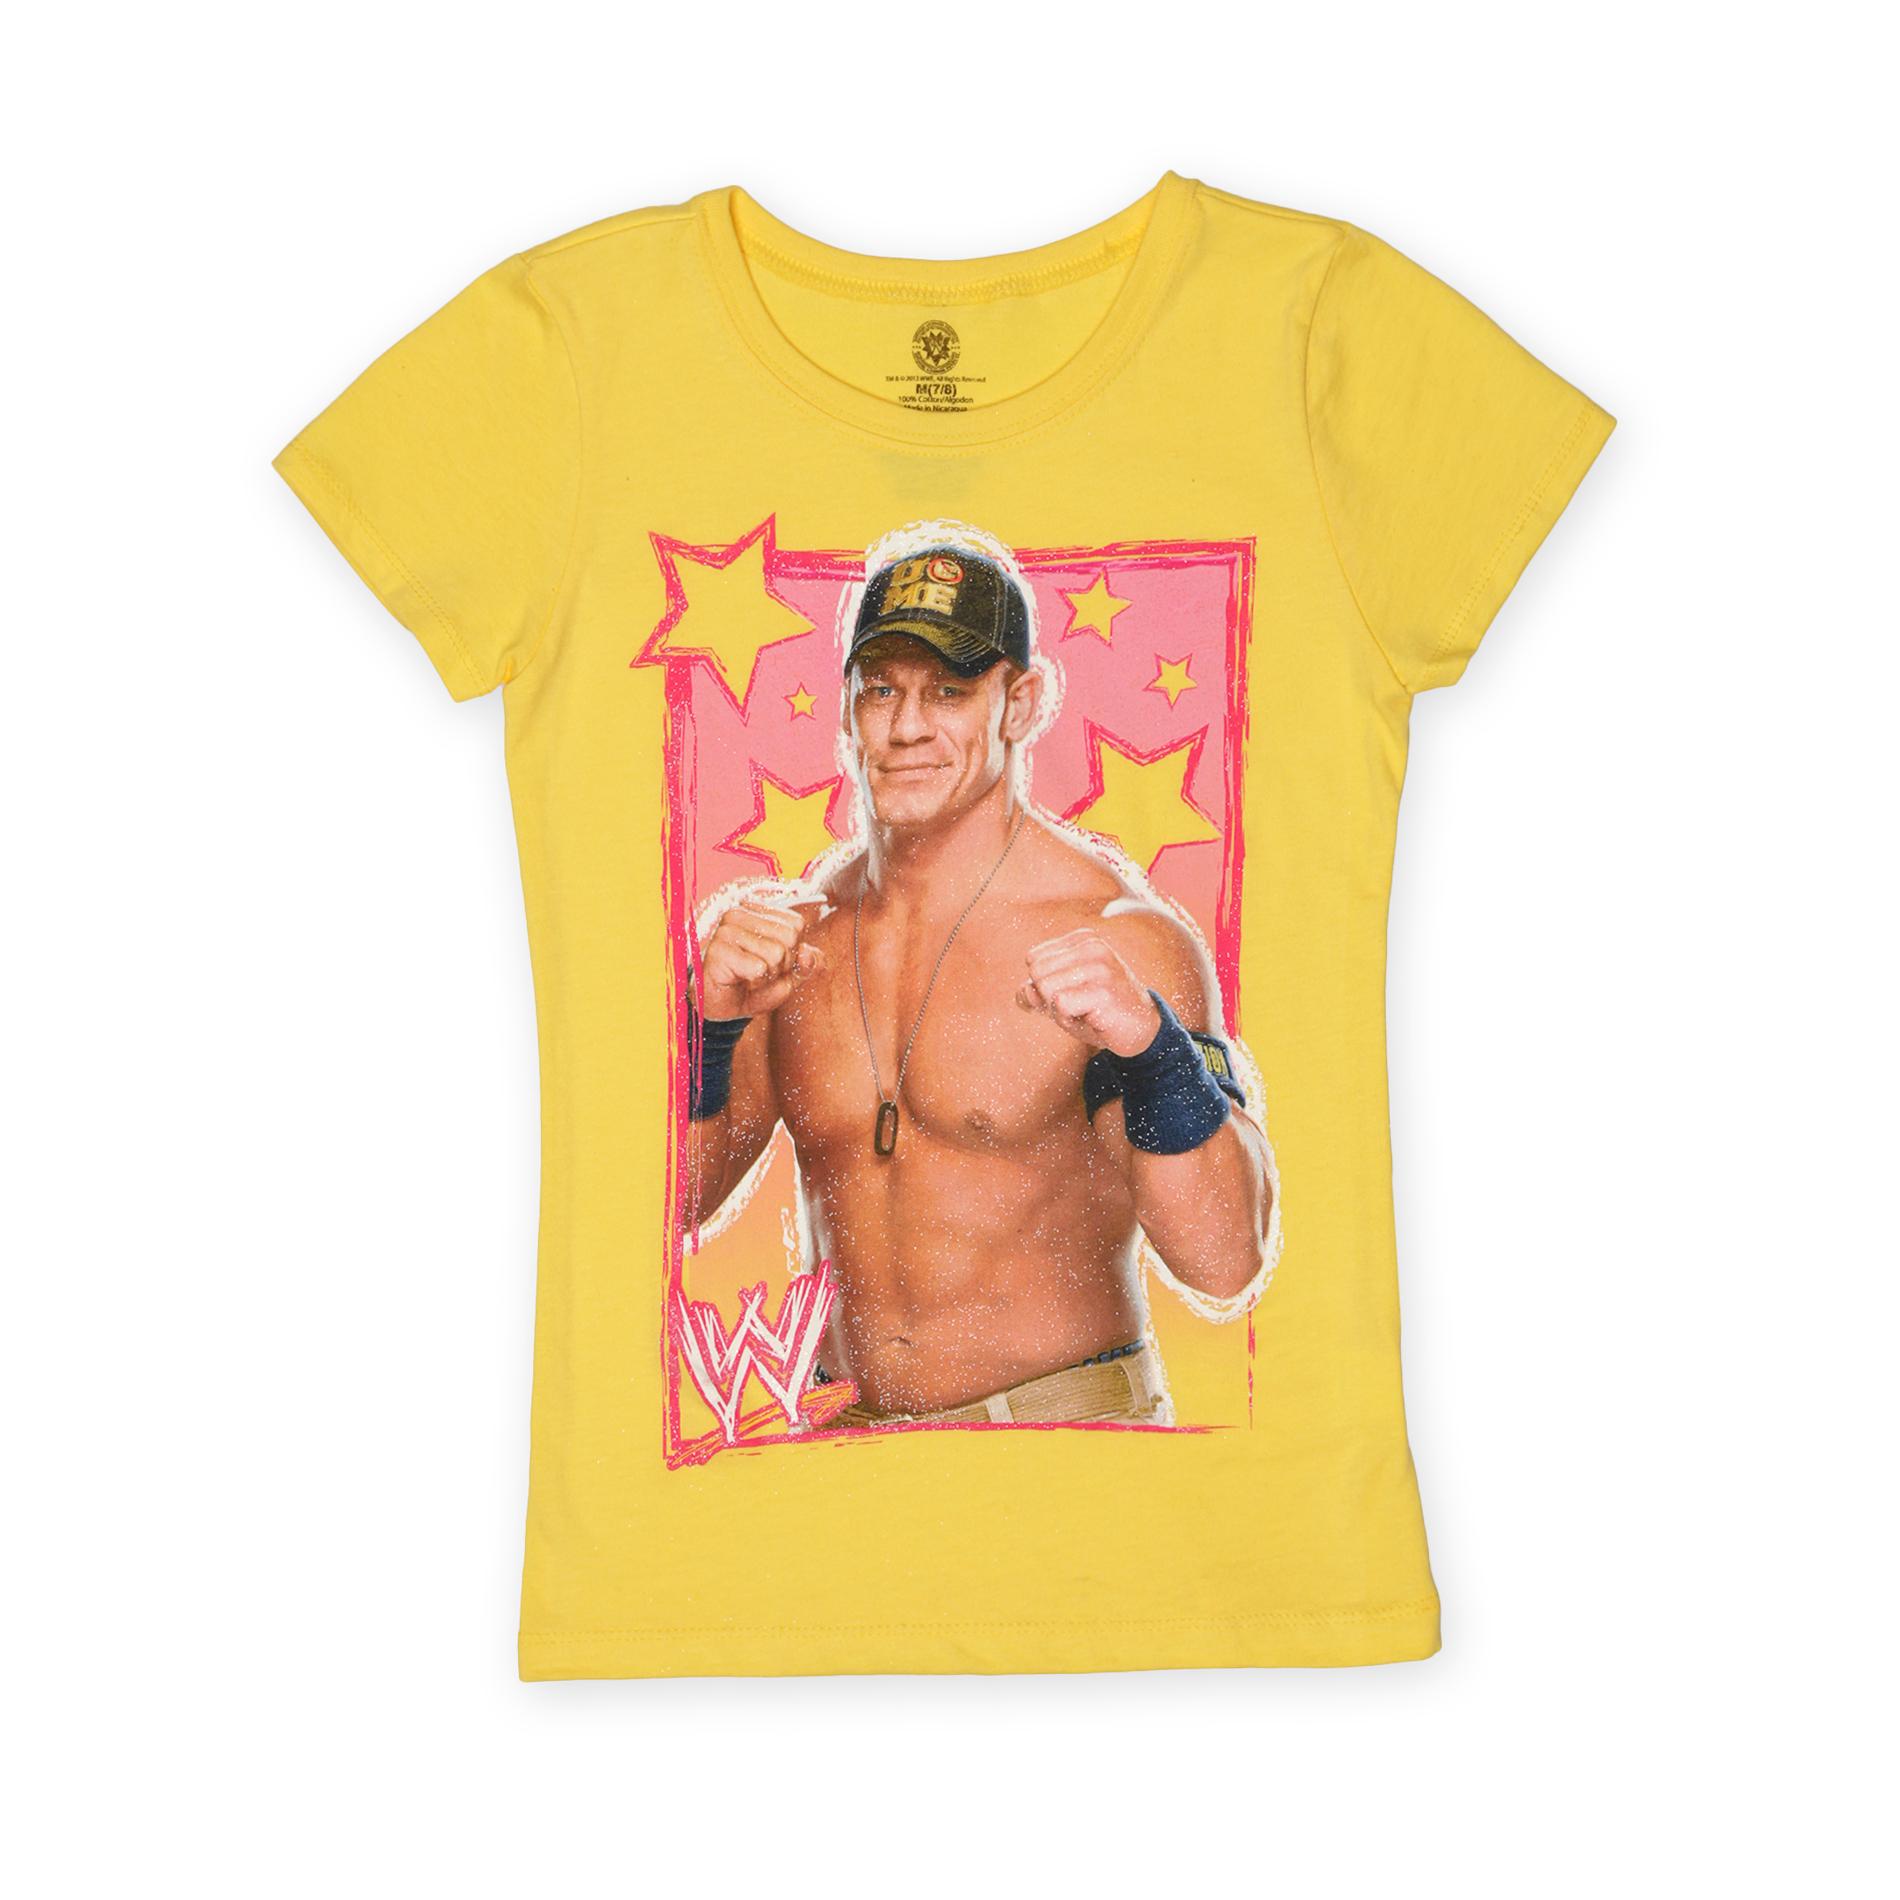 WWE Girl's Graphic T-Shirt - John Cena Stars